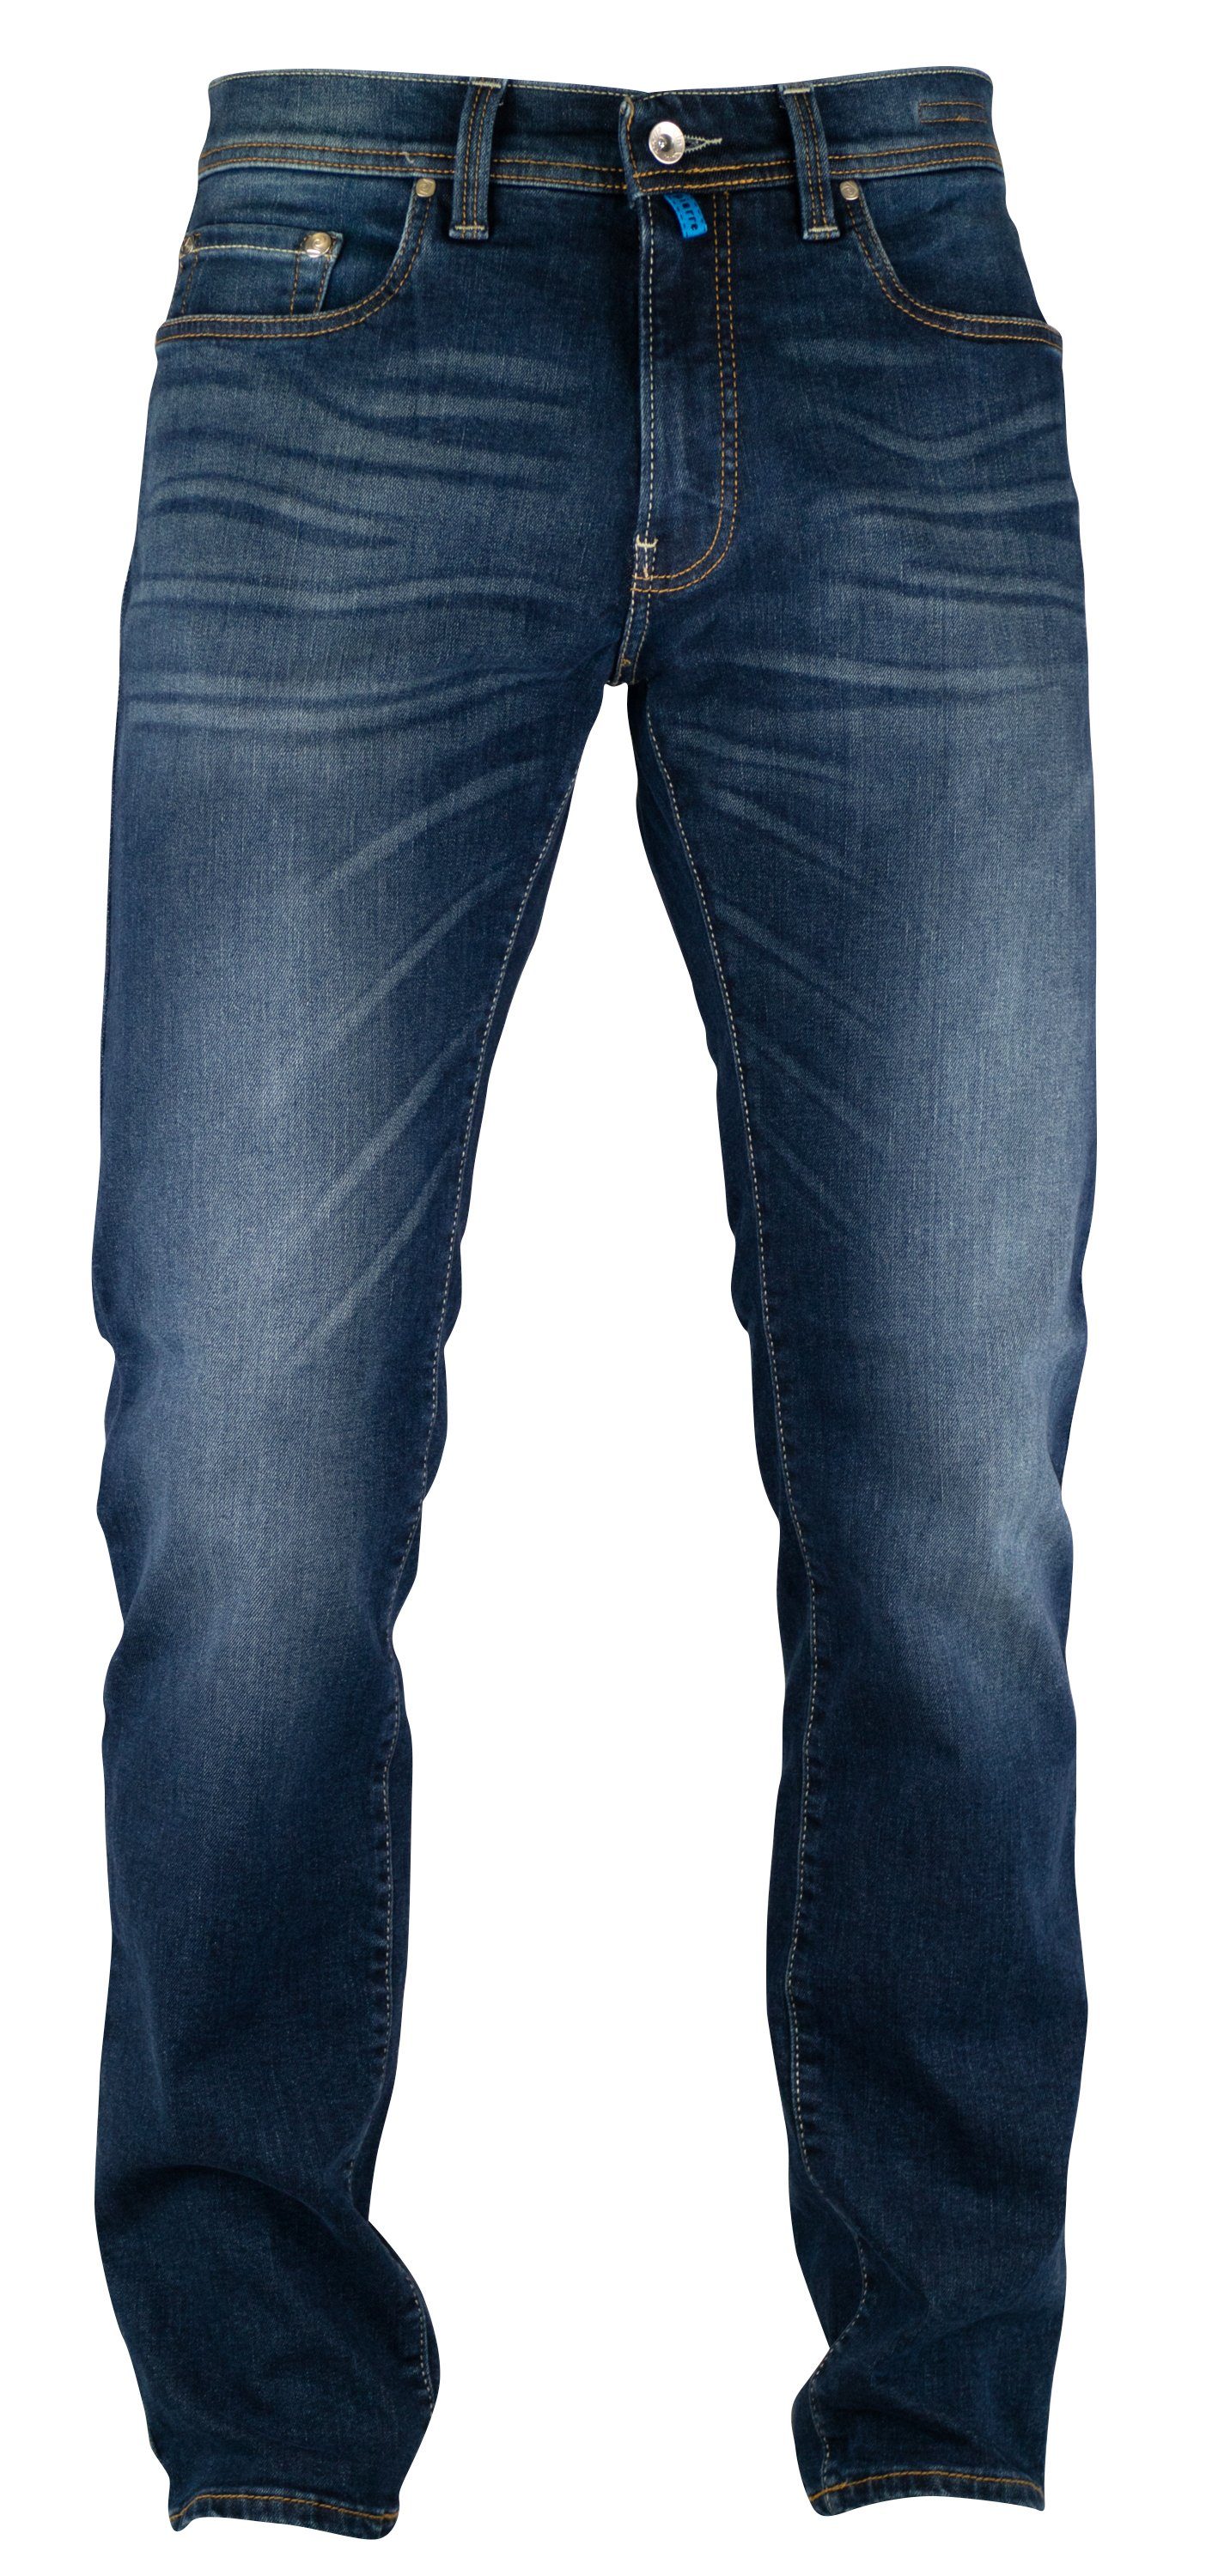 Pierre sun PIERRE used CARDIN washed 5-Pocket-Jeans Cardin mid 3451 FUTUREFLEX LYON blue vintage